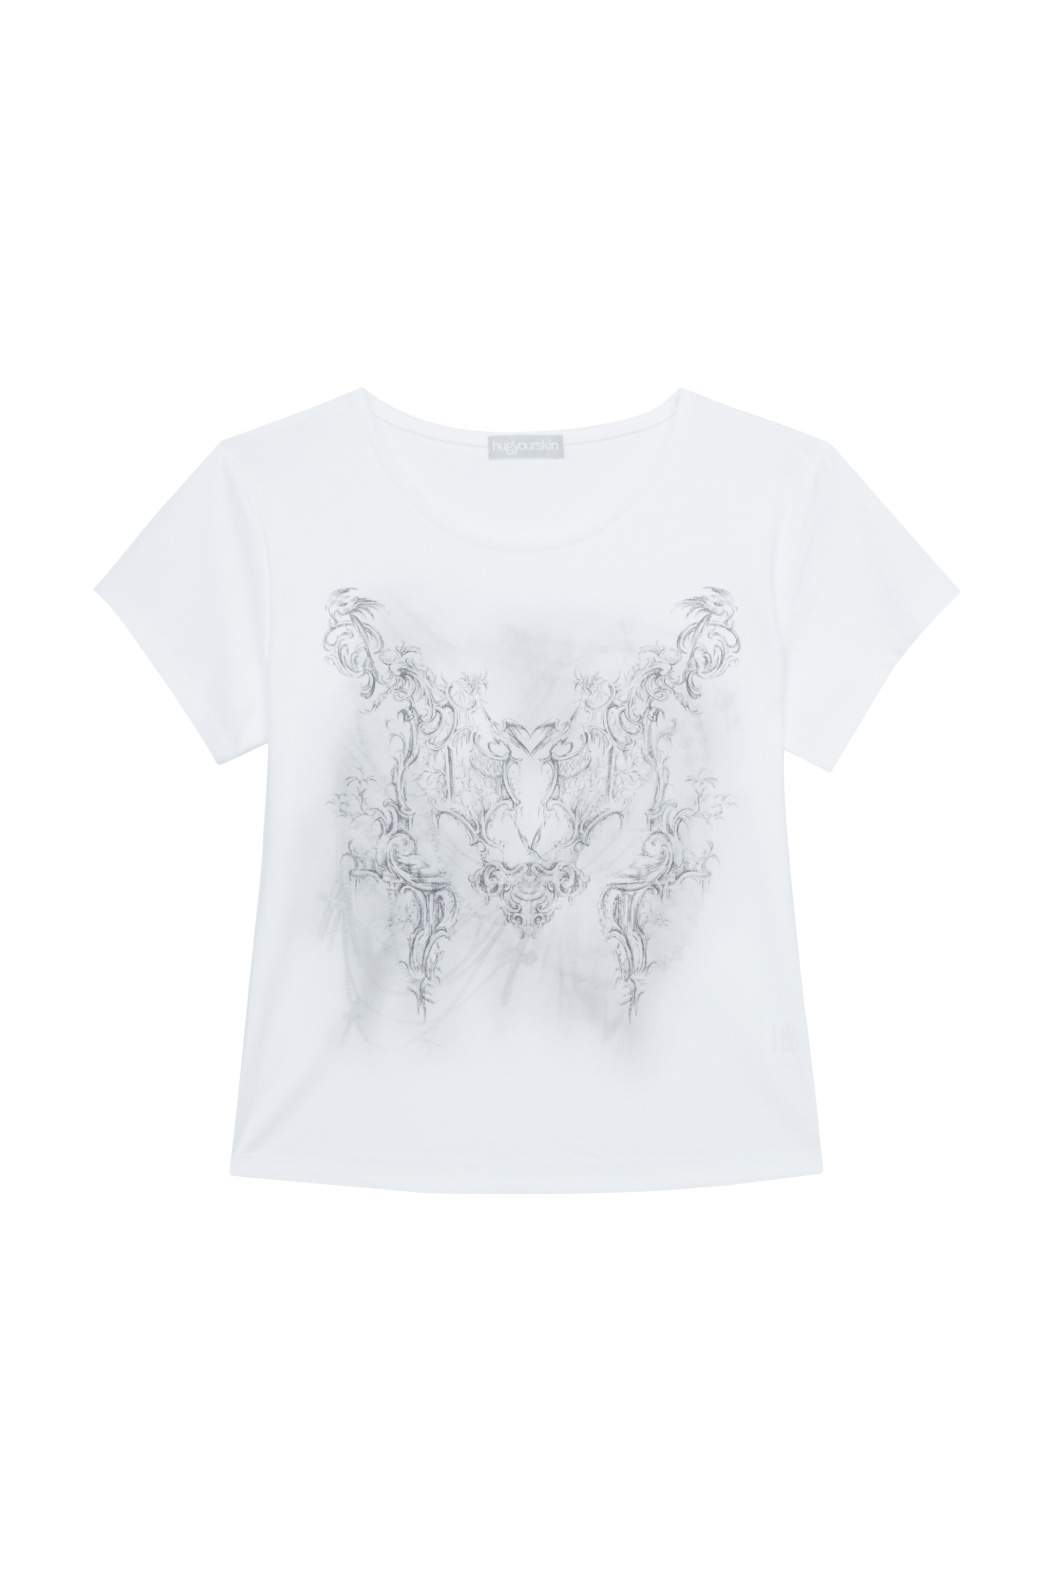 [5월 20일 예약배송]rococo T shirts HS ver (white)